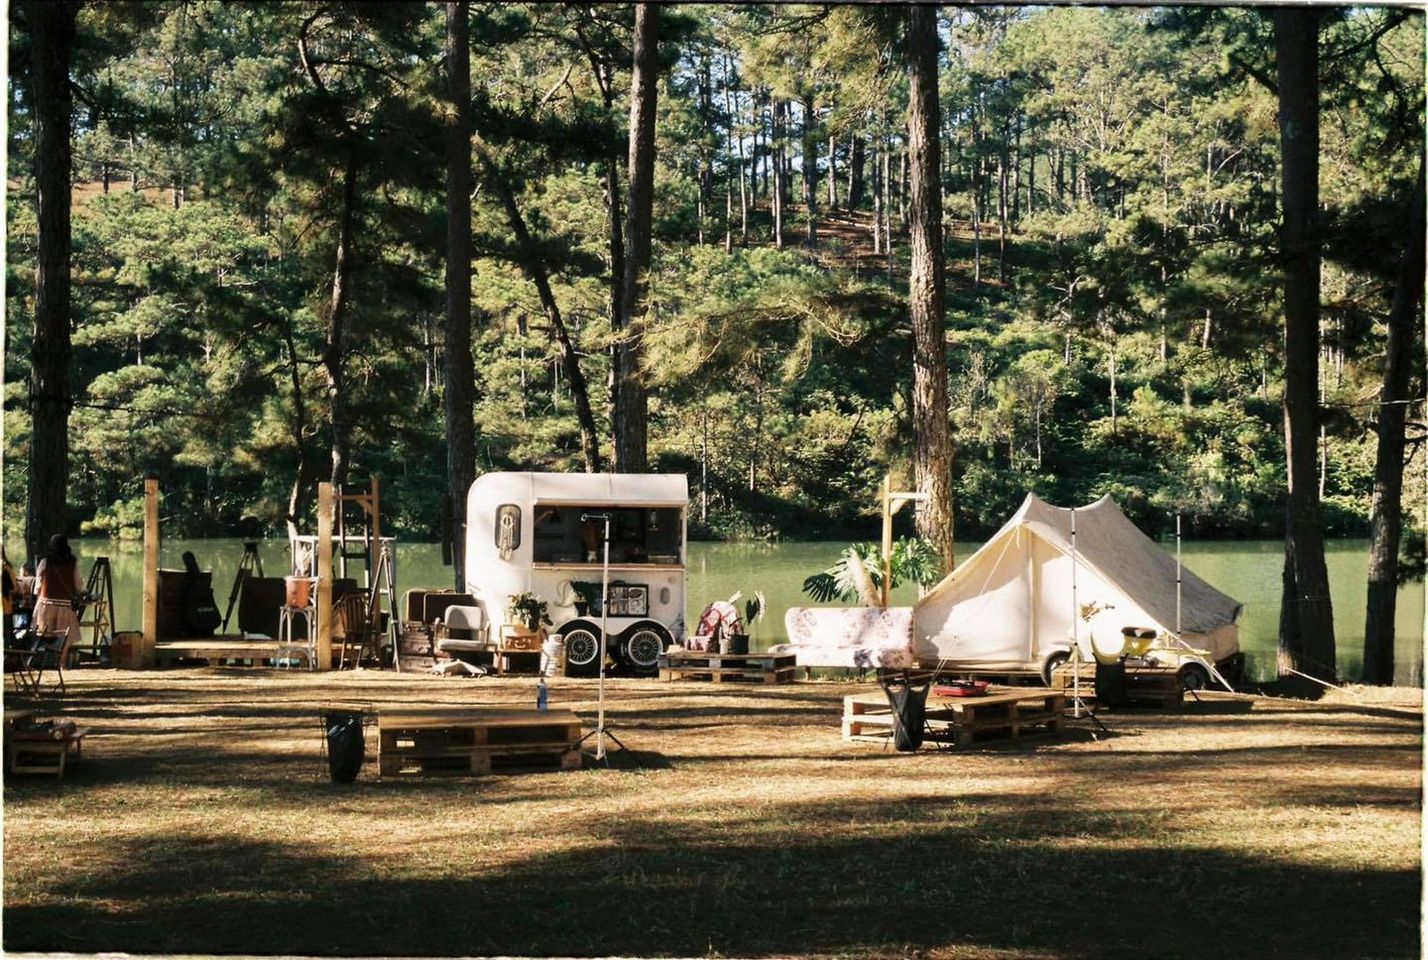 Điểm khiến nhiều người mê mẩn ở Camp Art là bối cảnh quá đỗi thơ mộng và đậm chất nghệ thuật.